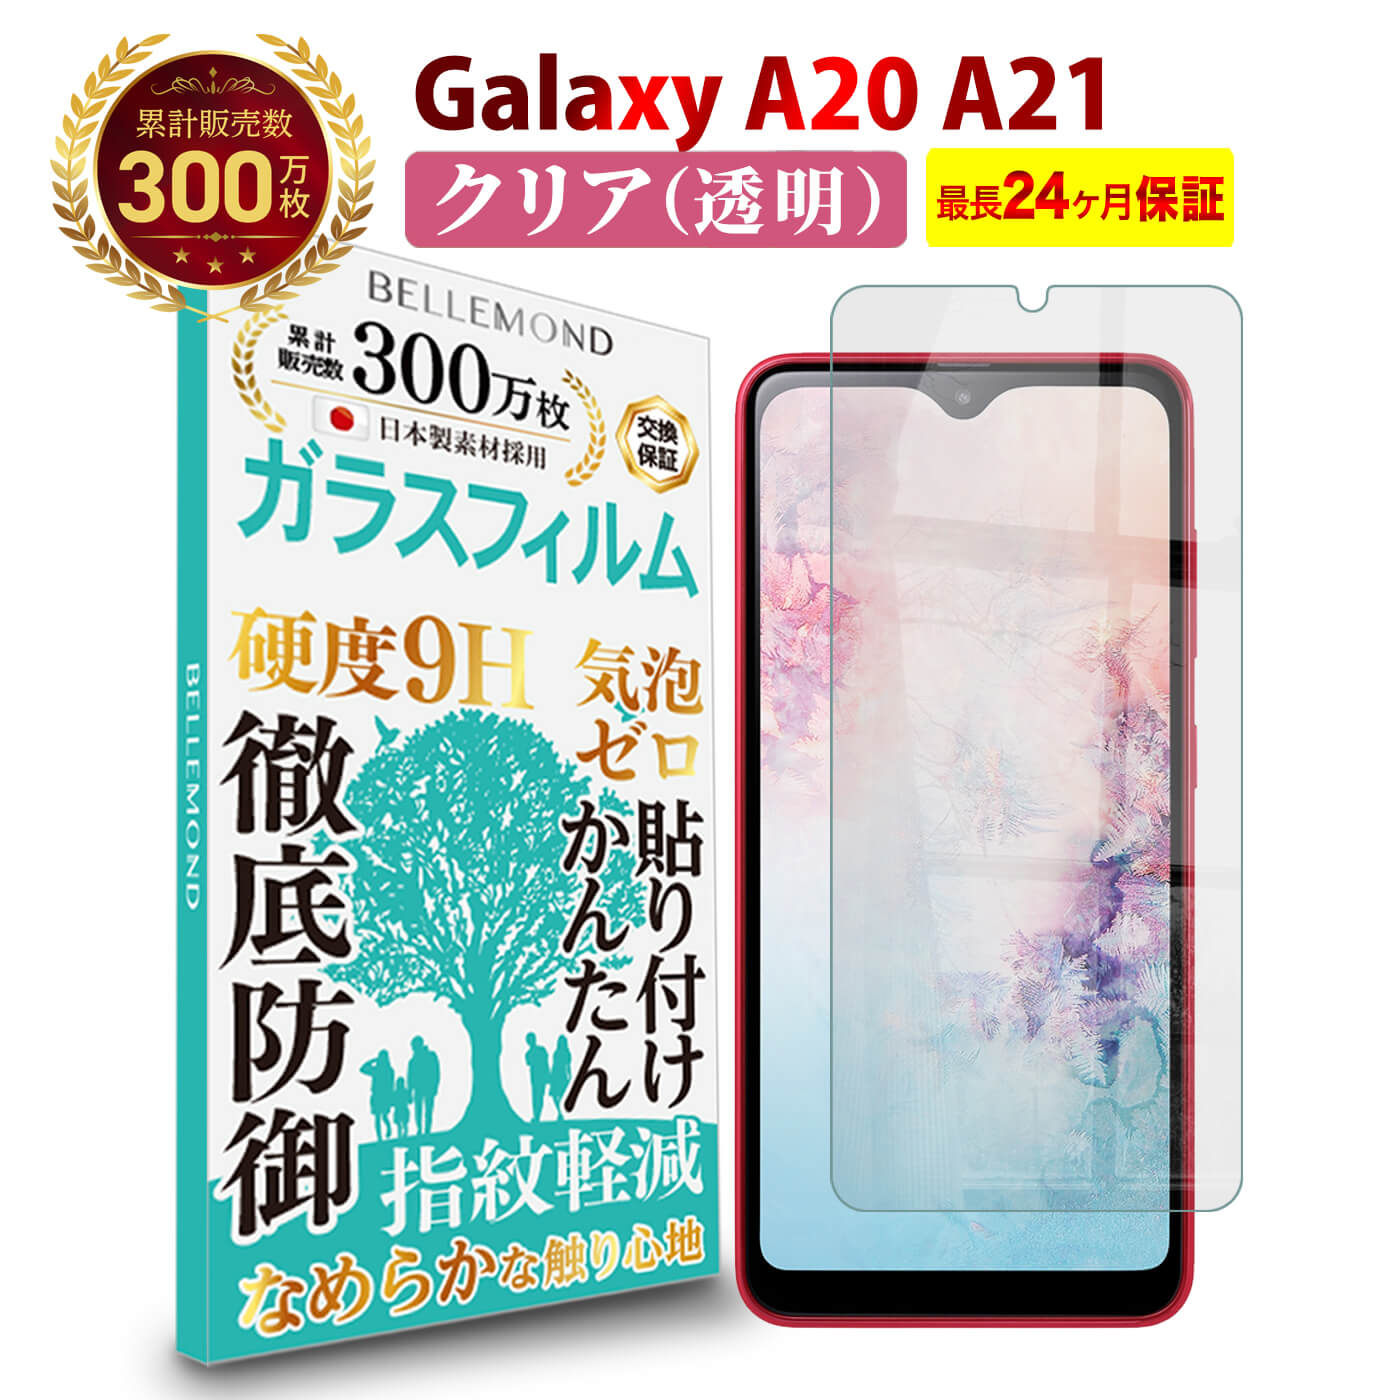 【LINE登録で10%OFF!】 Galaxy A23 5G / A22 5